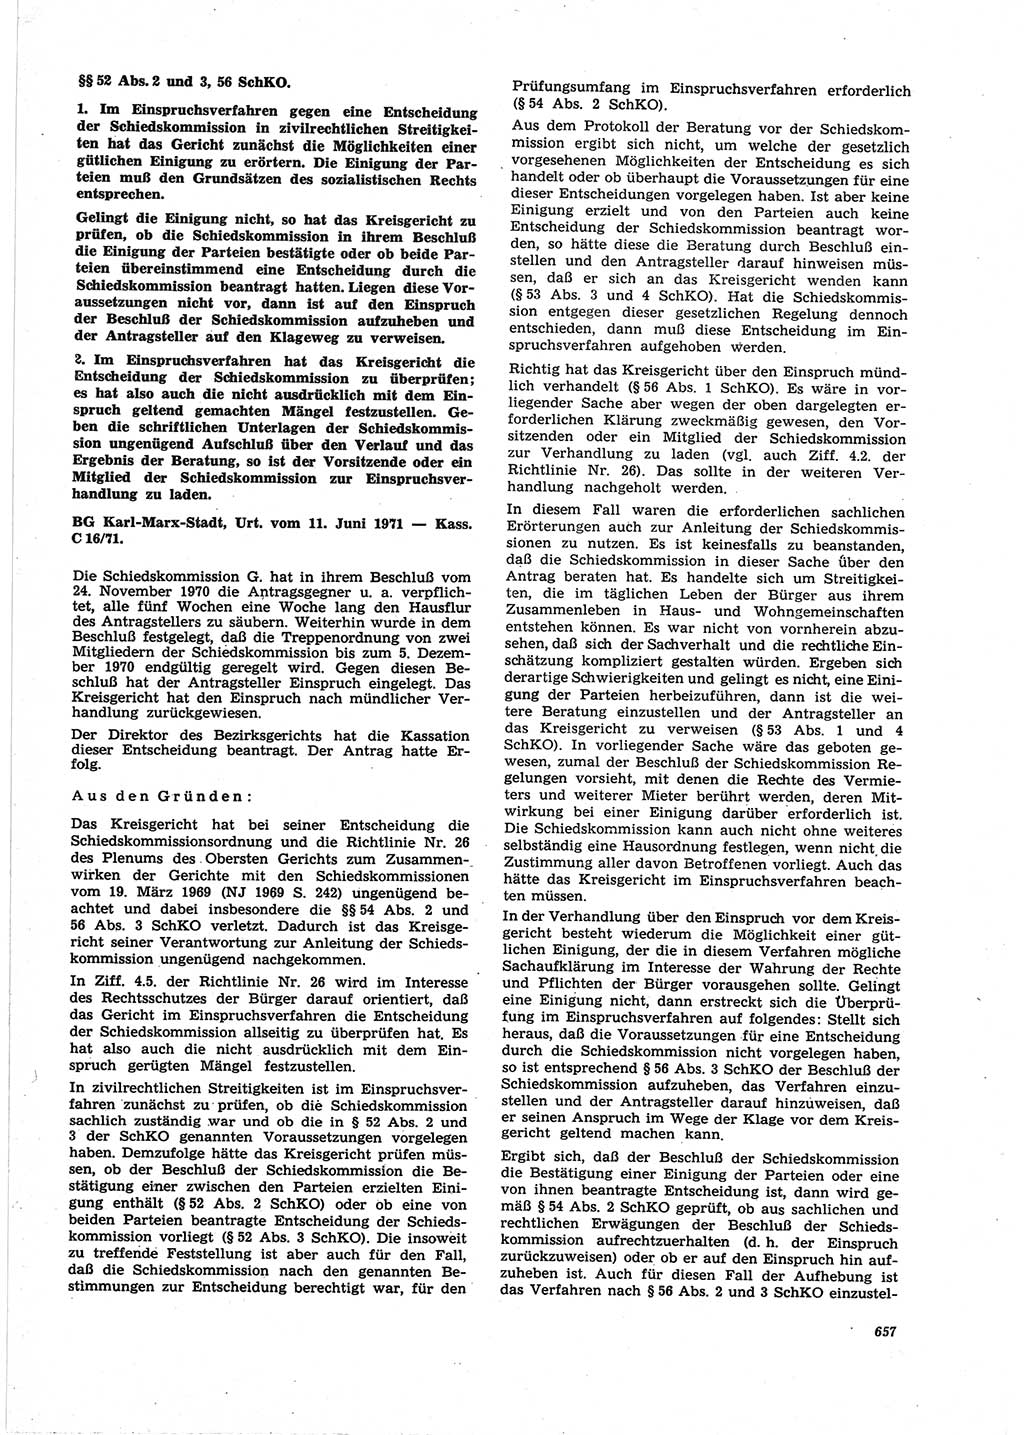 Neue Justiz (NJ), Zeitschrift für Recht und Rechtswissenschaft [Deutsche Demokratische Republik (DDR)], 25. Jahrgang 1971, Seite 657 (NJ DDR 1971, S. 657)